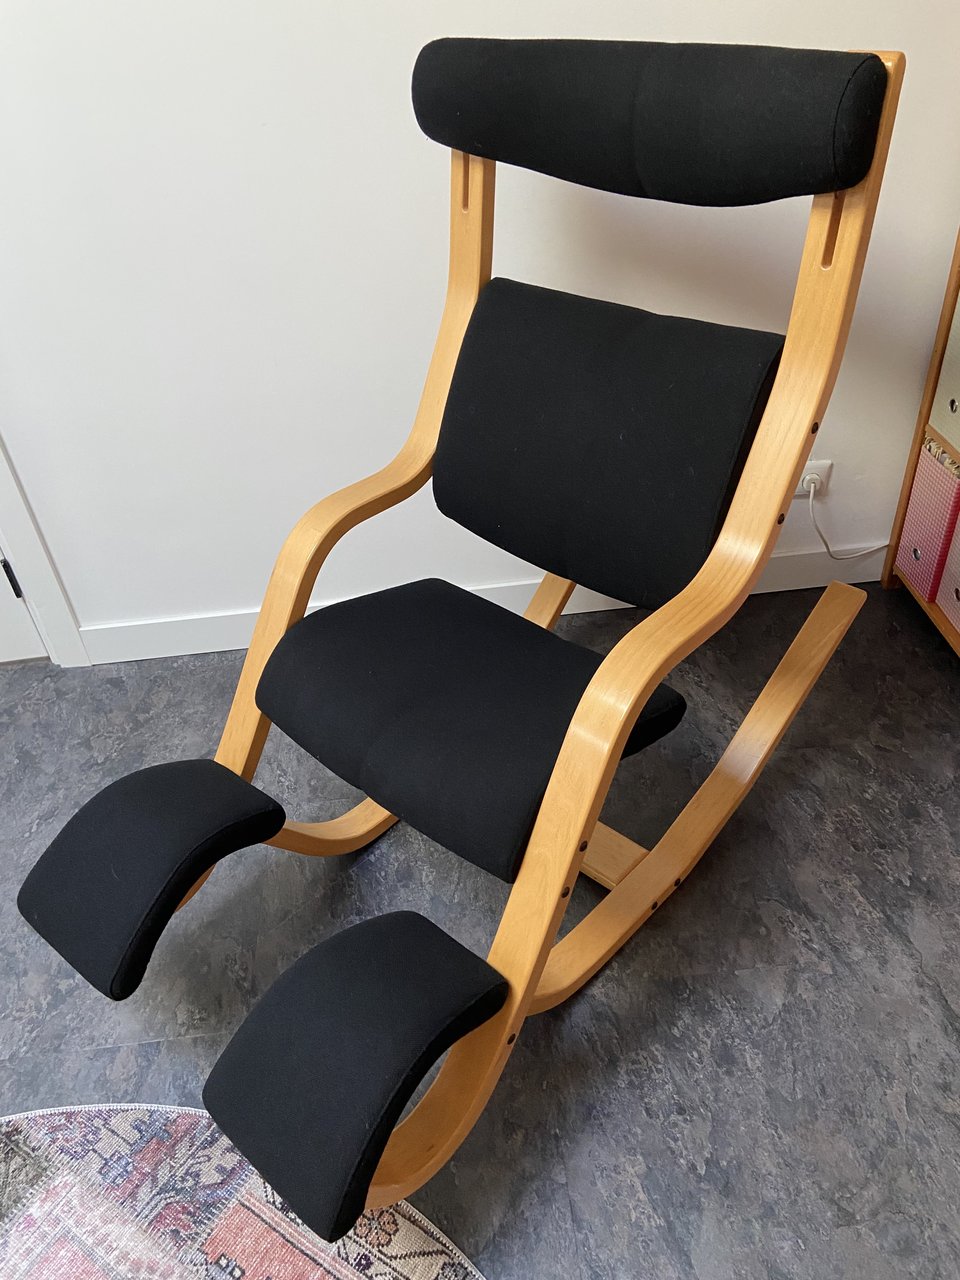 Stokke stoelen – Tot 70% goedkoper Whoppah | Whoppah